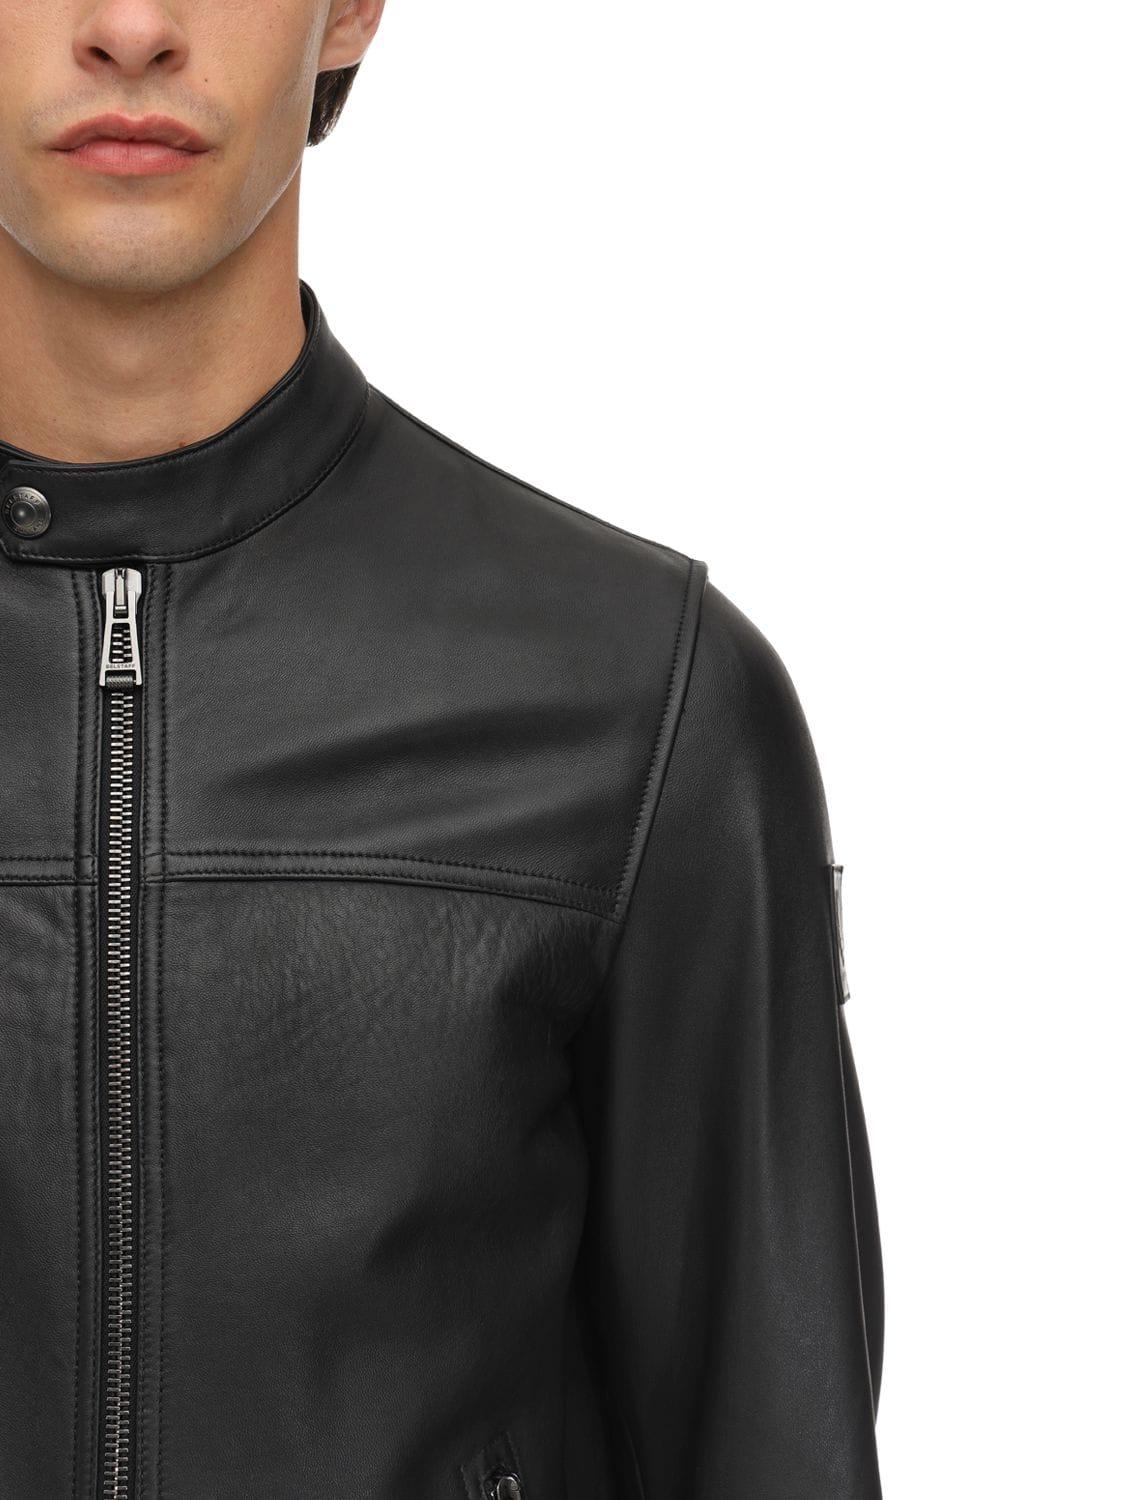 Belstaff Pelham Polished Leather Jacket in Black for Men - Lyst